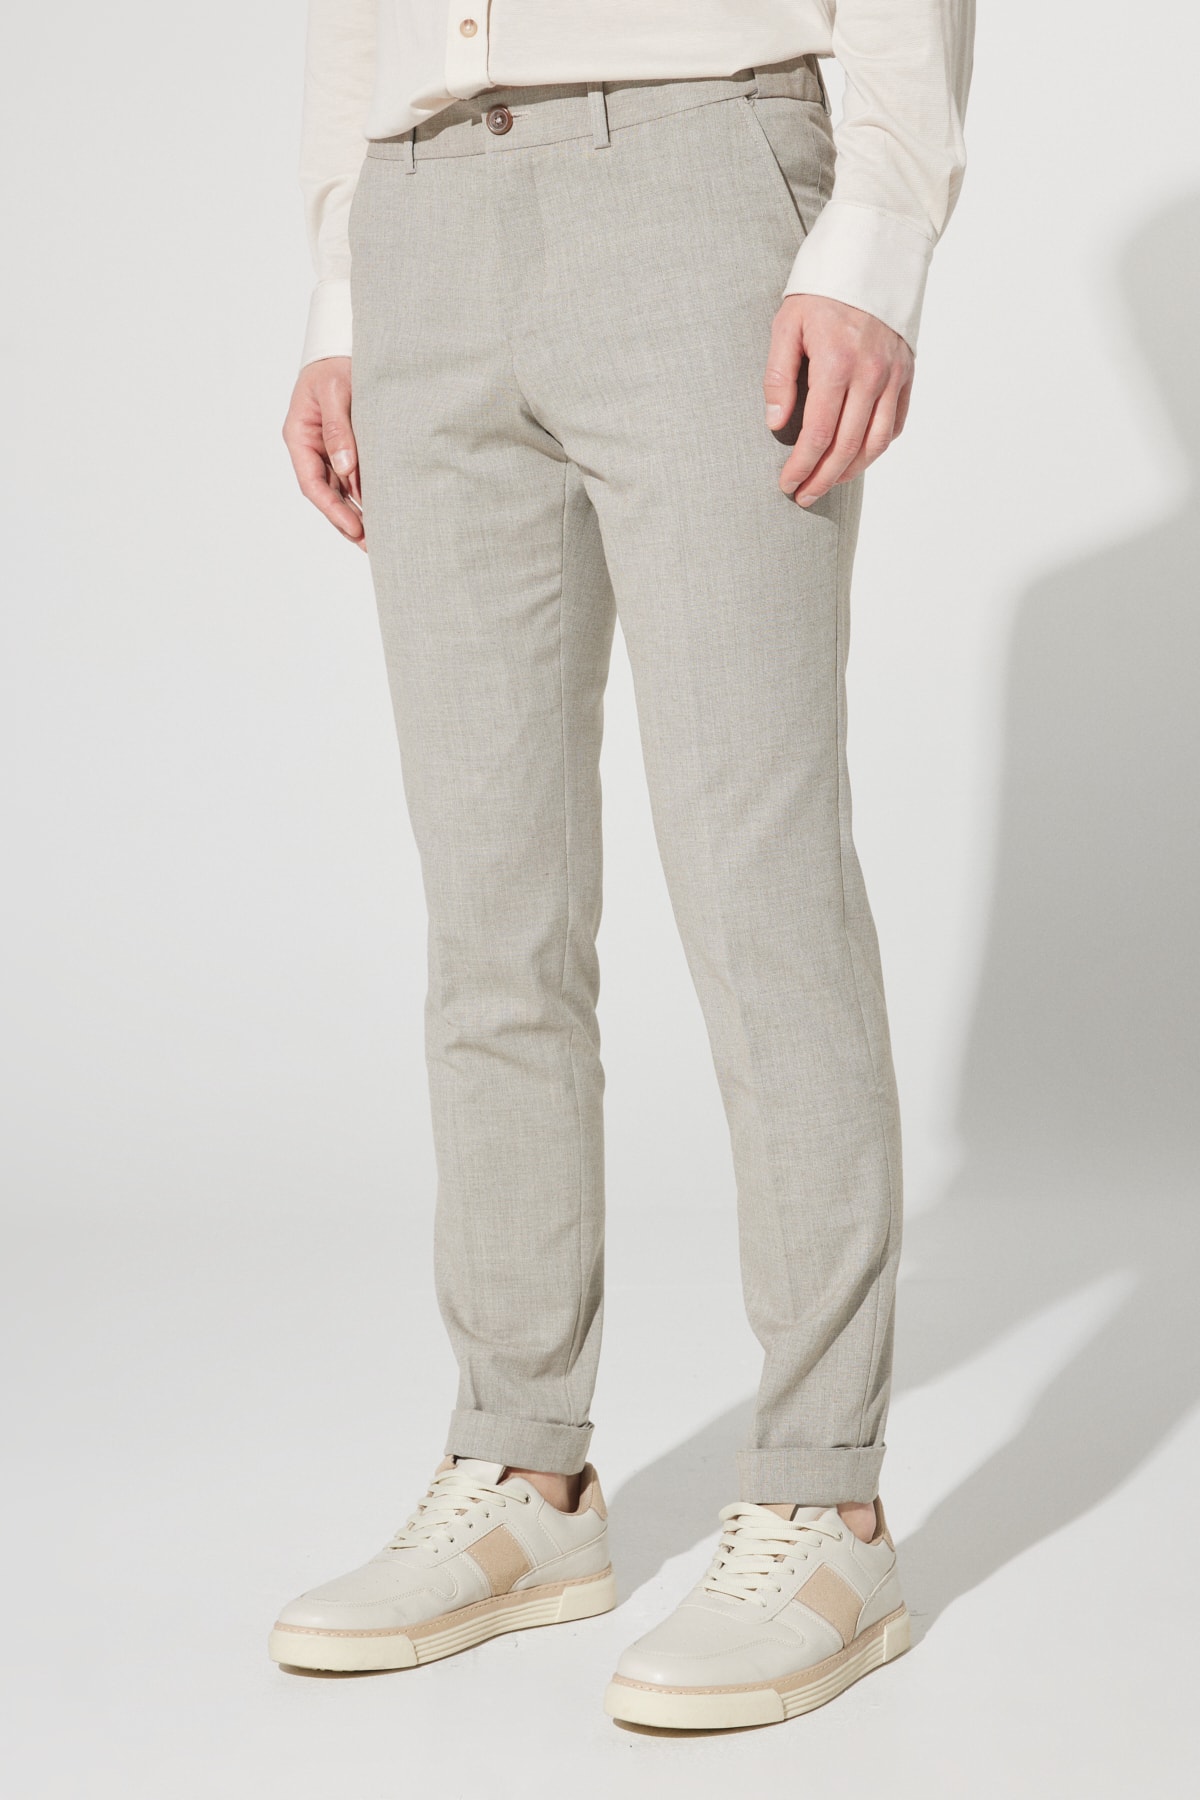 Levně ALTINYILDIZ CLASSICS Men's Beige Slim Fit Slim Fit Patterned Flexible Elastic Waist Trousers.